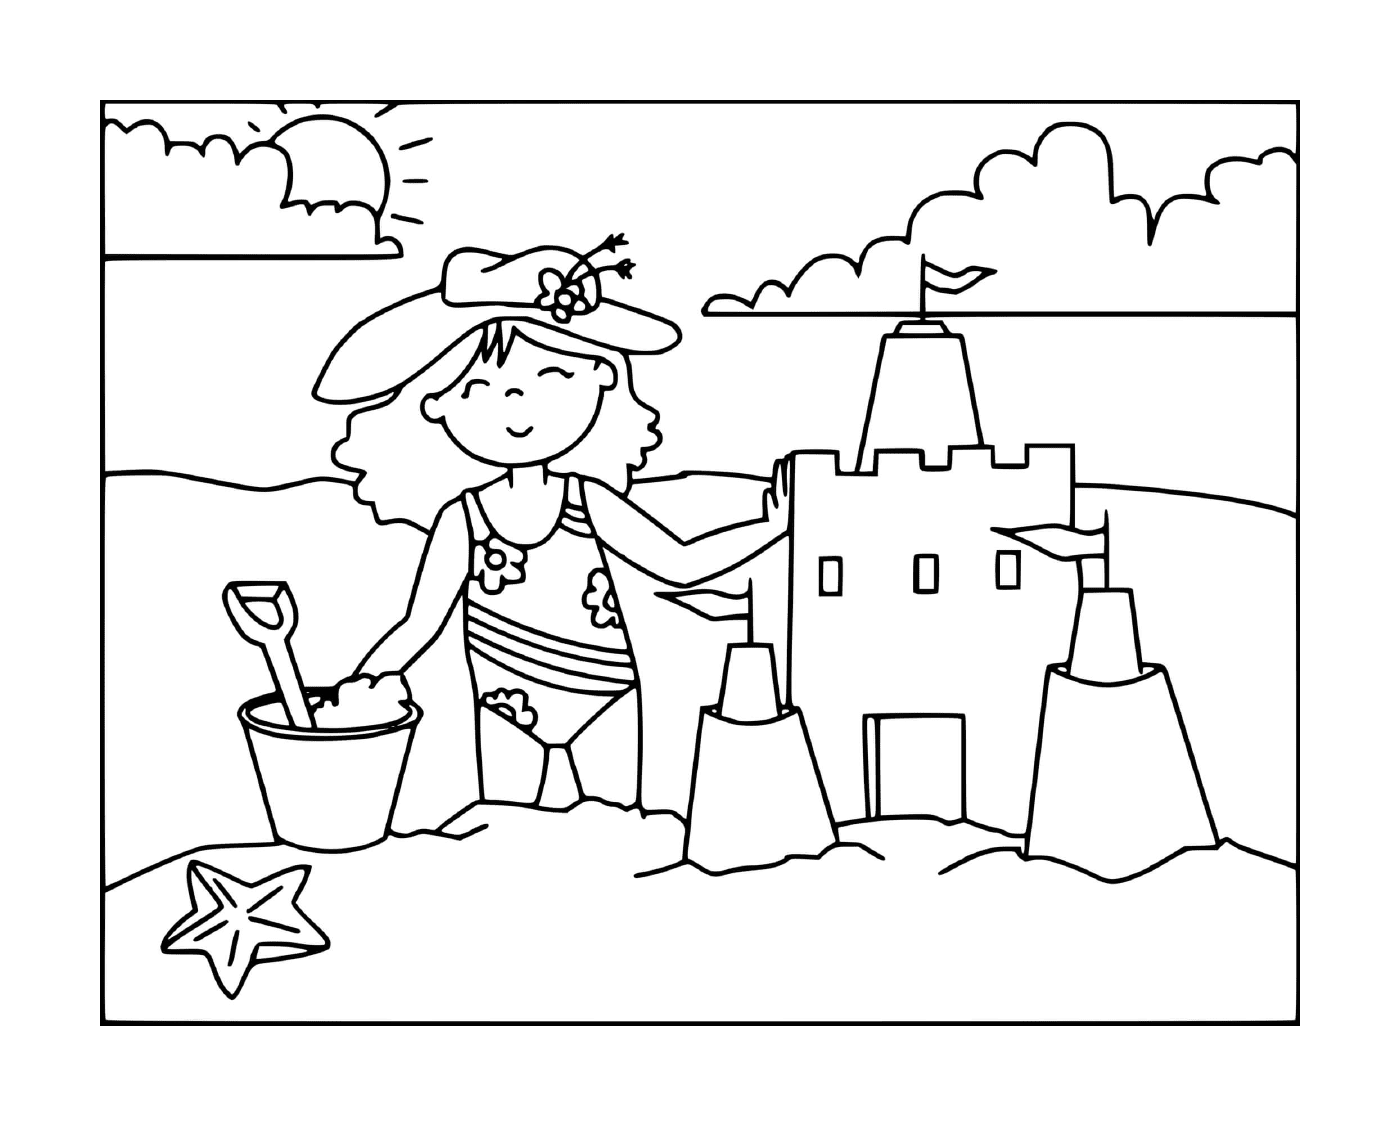   Une fille construit un château de sable sur la plage 